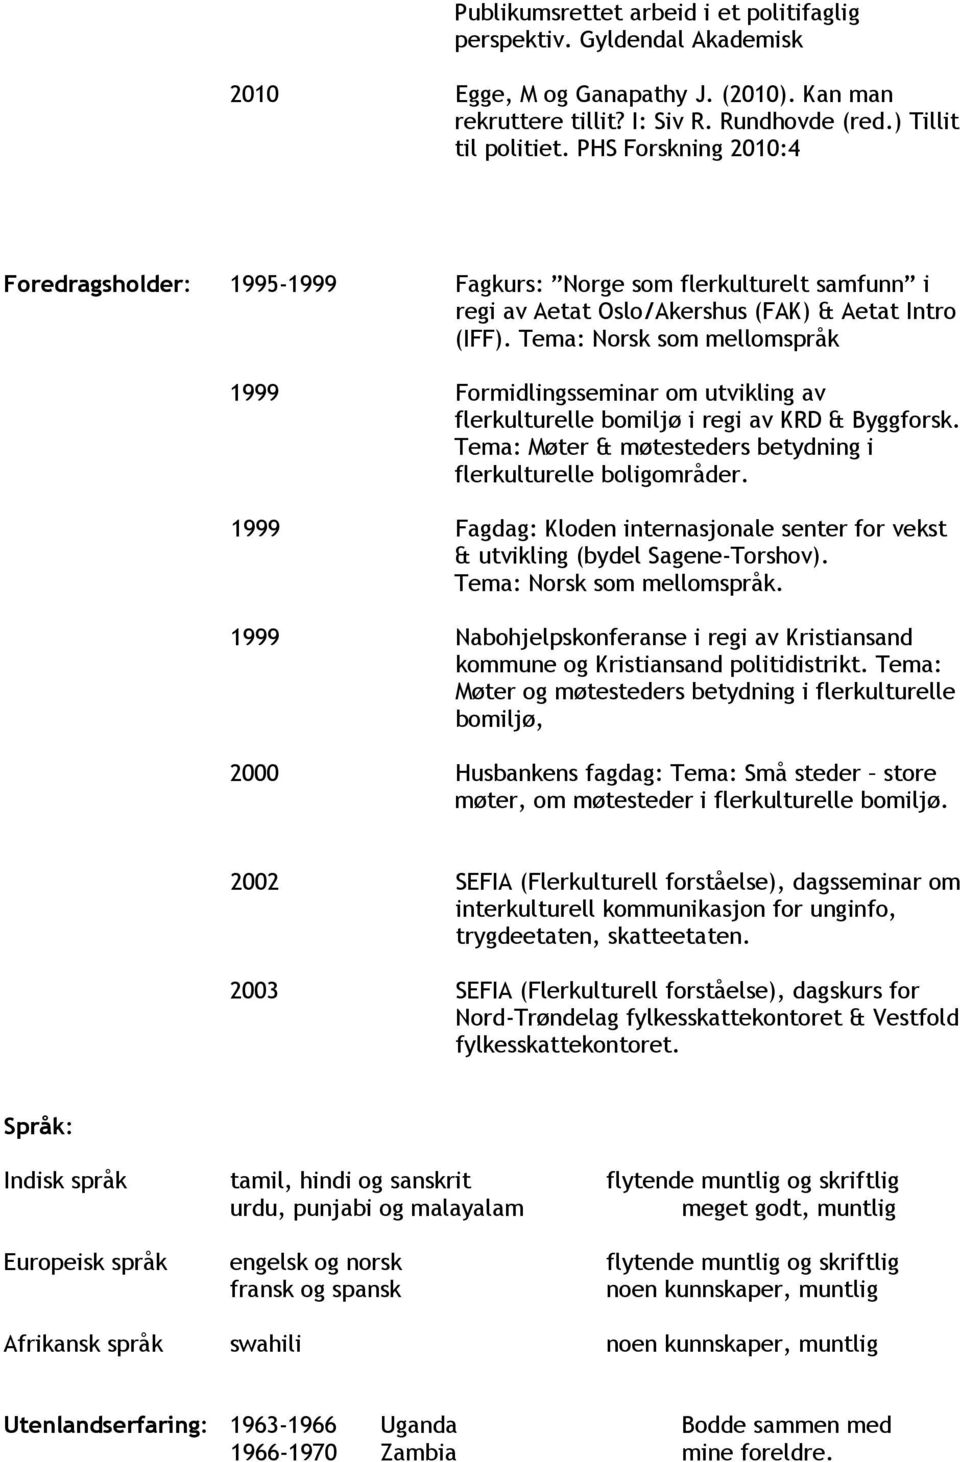 Tema: Norsk som mellomspråk 1999 Formidlingsseminar om utvikling av flerkulturelle bomiljø i regi av KRD & Byggforsk. Tema: Møter & møtesteders betydning i flerkulturelle boligområder.